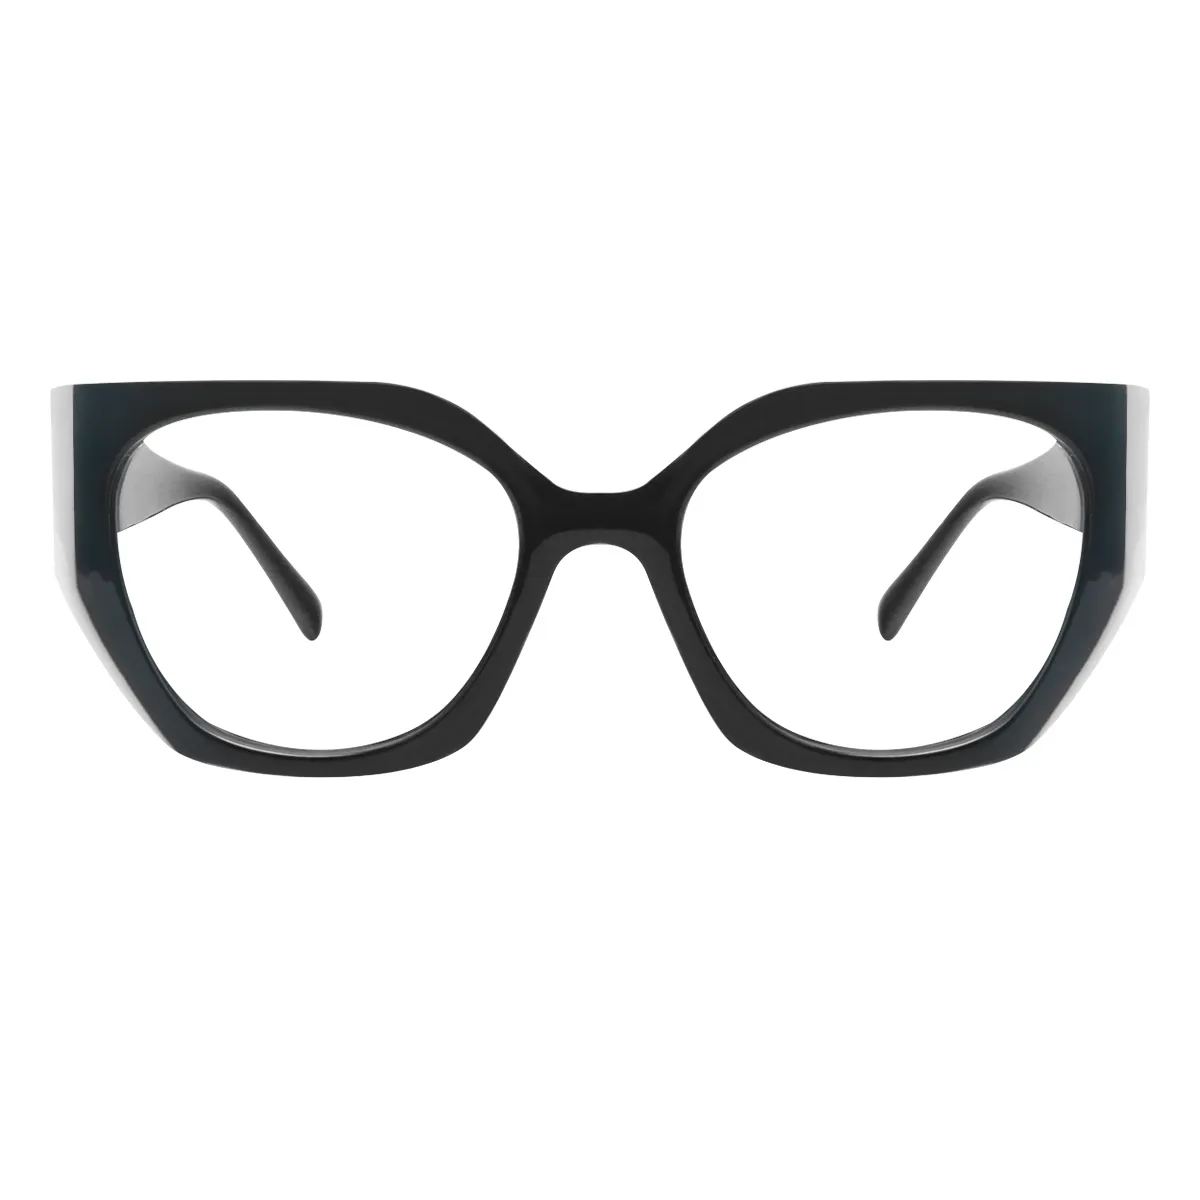 Herring - Geometric Black-White Glasses for Women